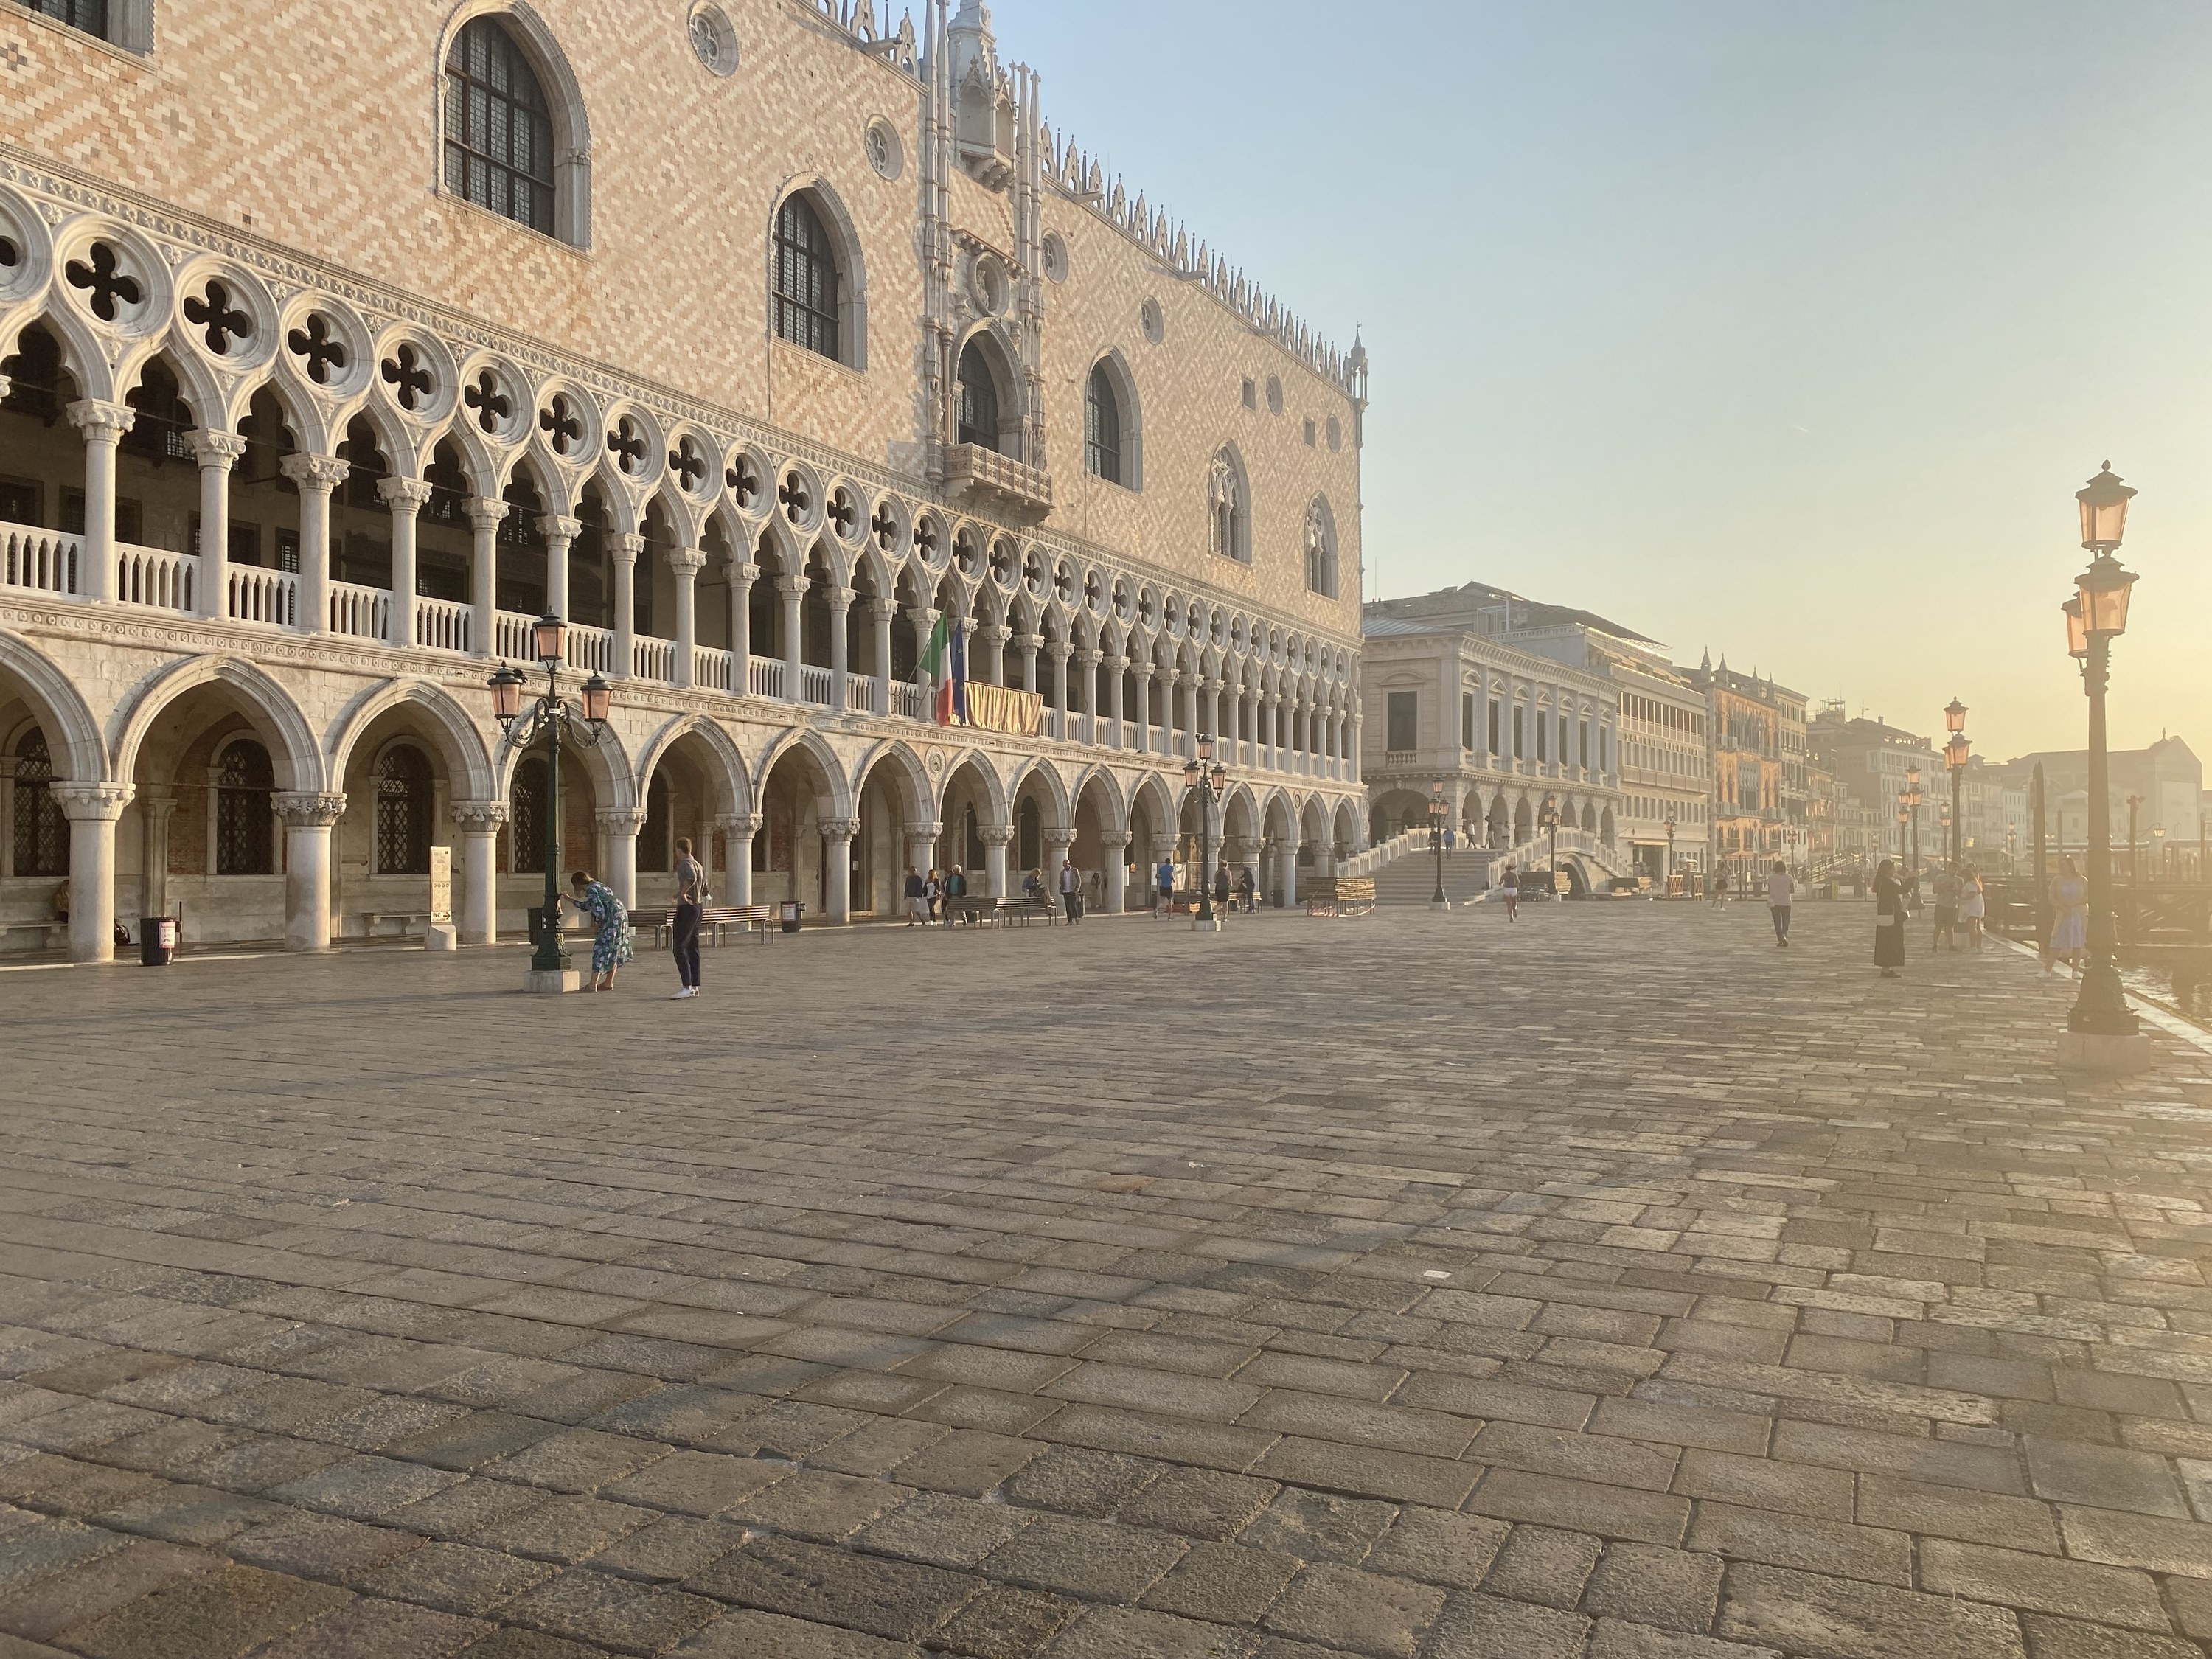 A piazza in Venice at sunrise